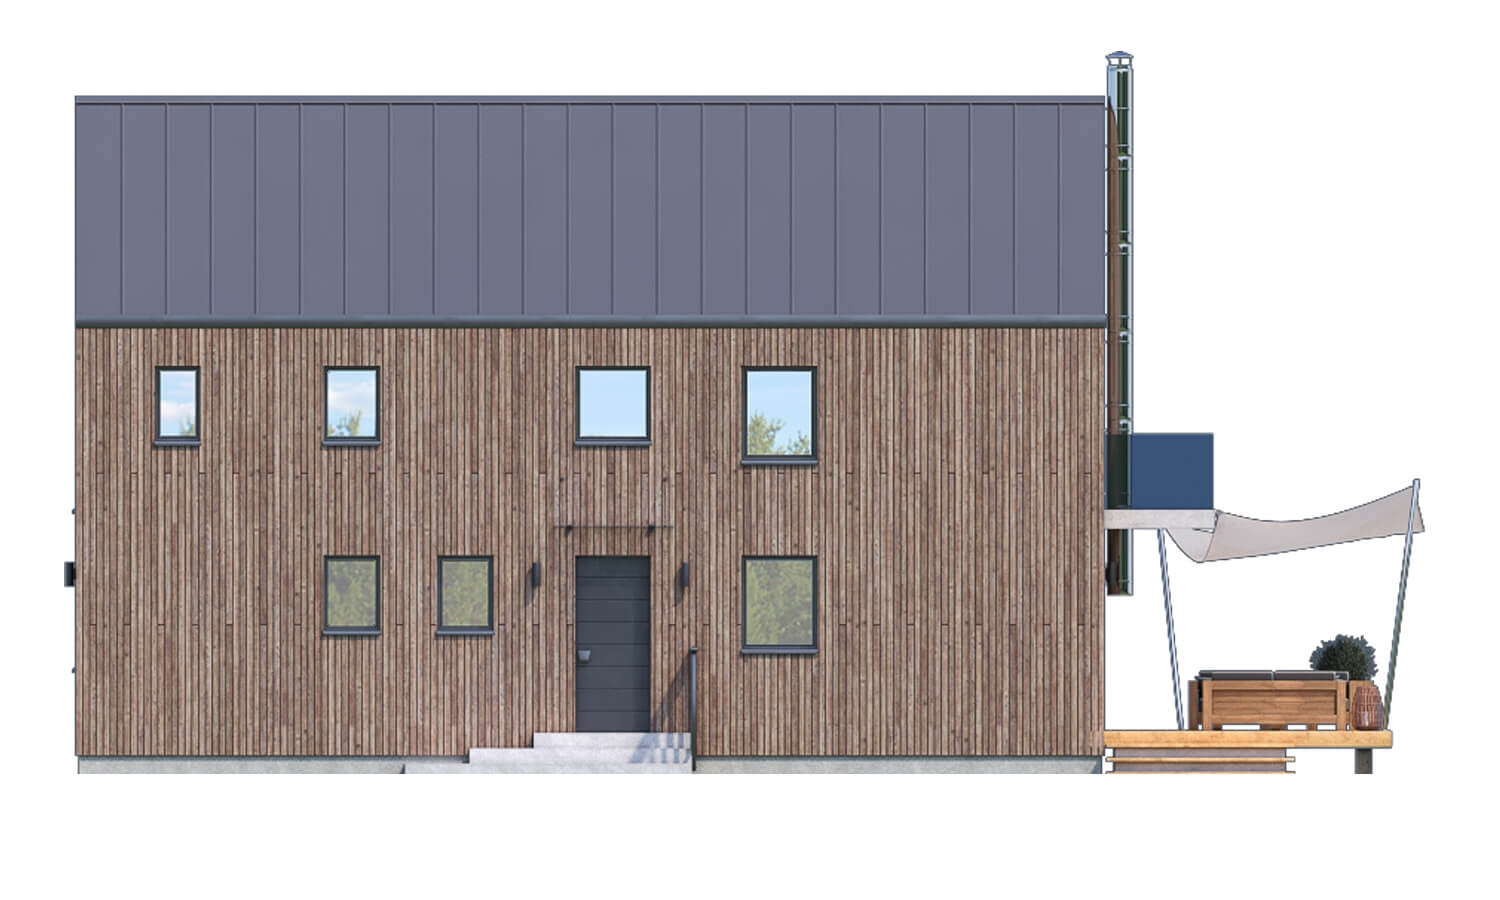 Pohľad 2. - Projekt moderního domu s garáží, který je vhodný i na úzký pozemek.